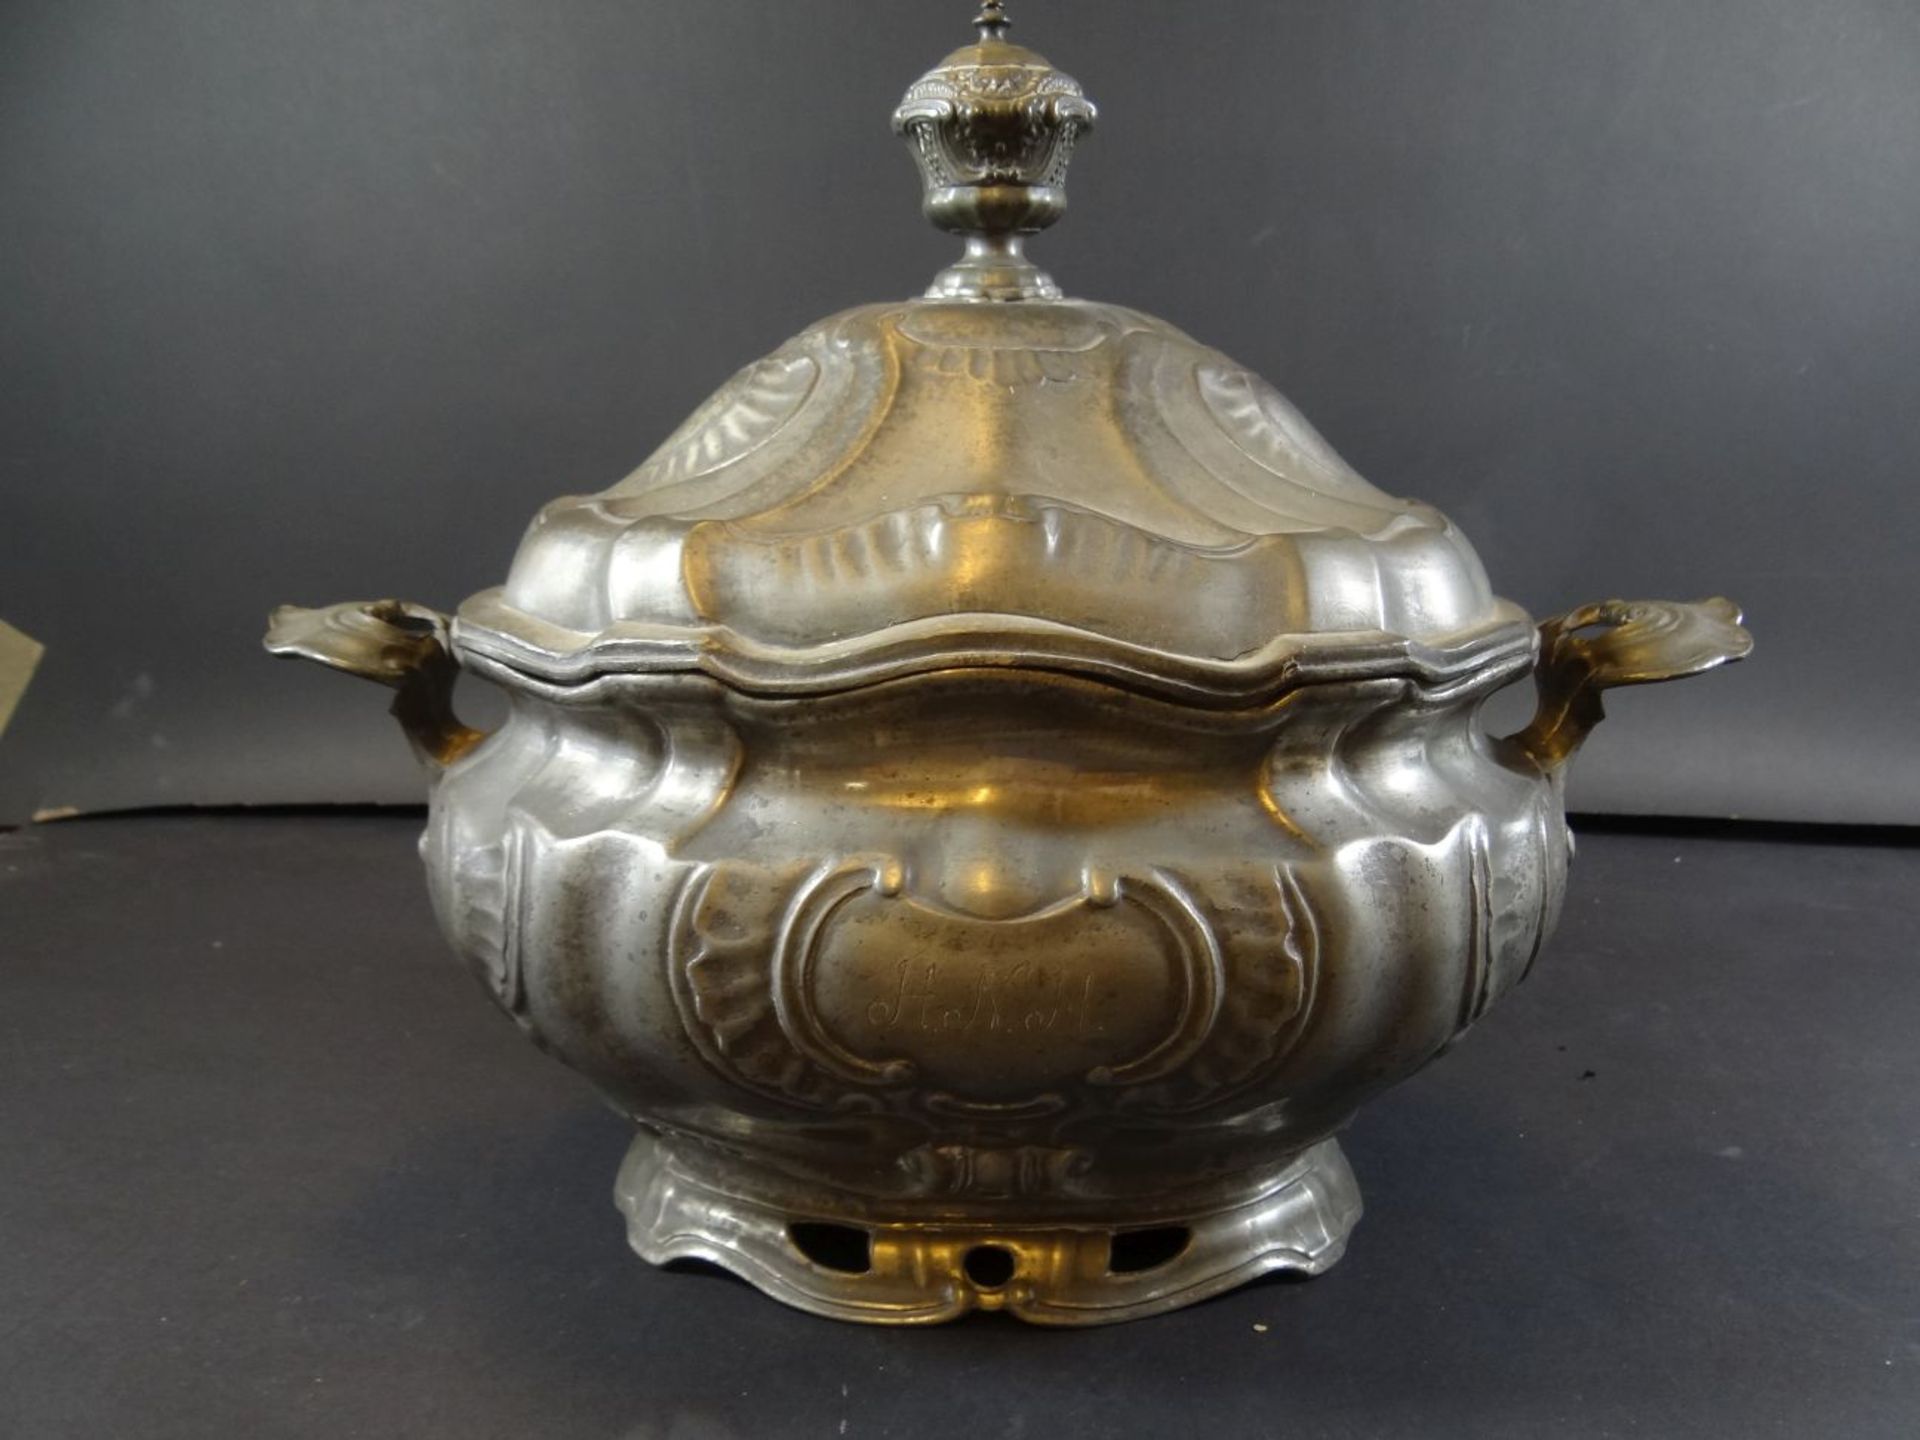 grosse ovale Zinn-Prunkterinne, Engelmarke um 1850, 28 cm, 26x21 cm, Altersspuren